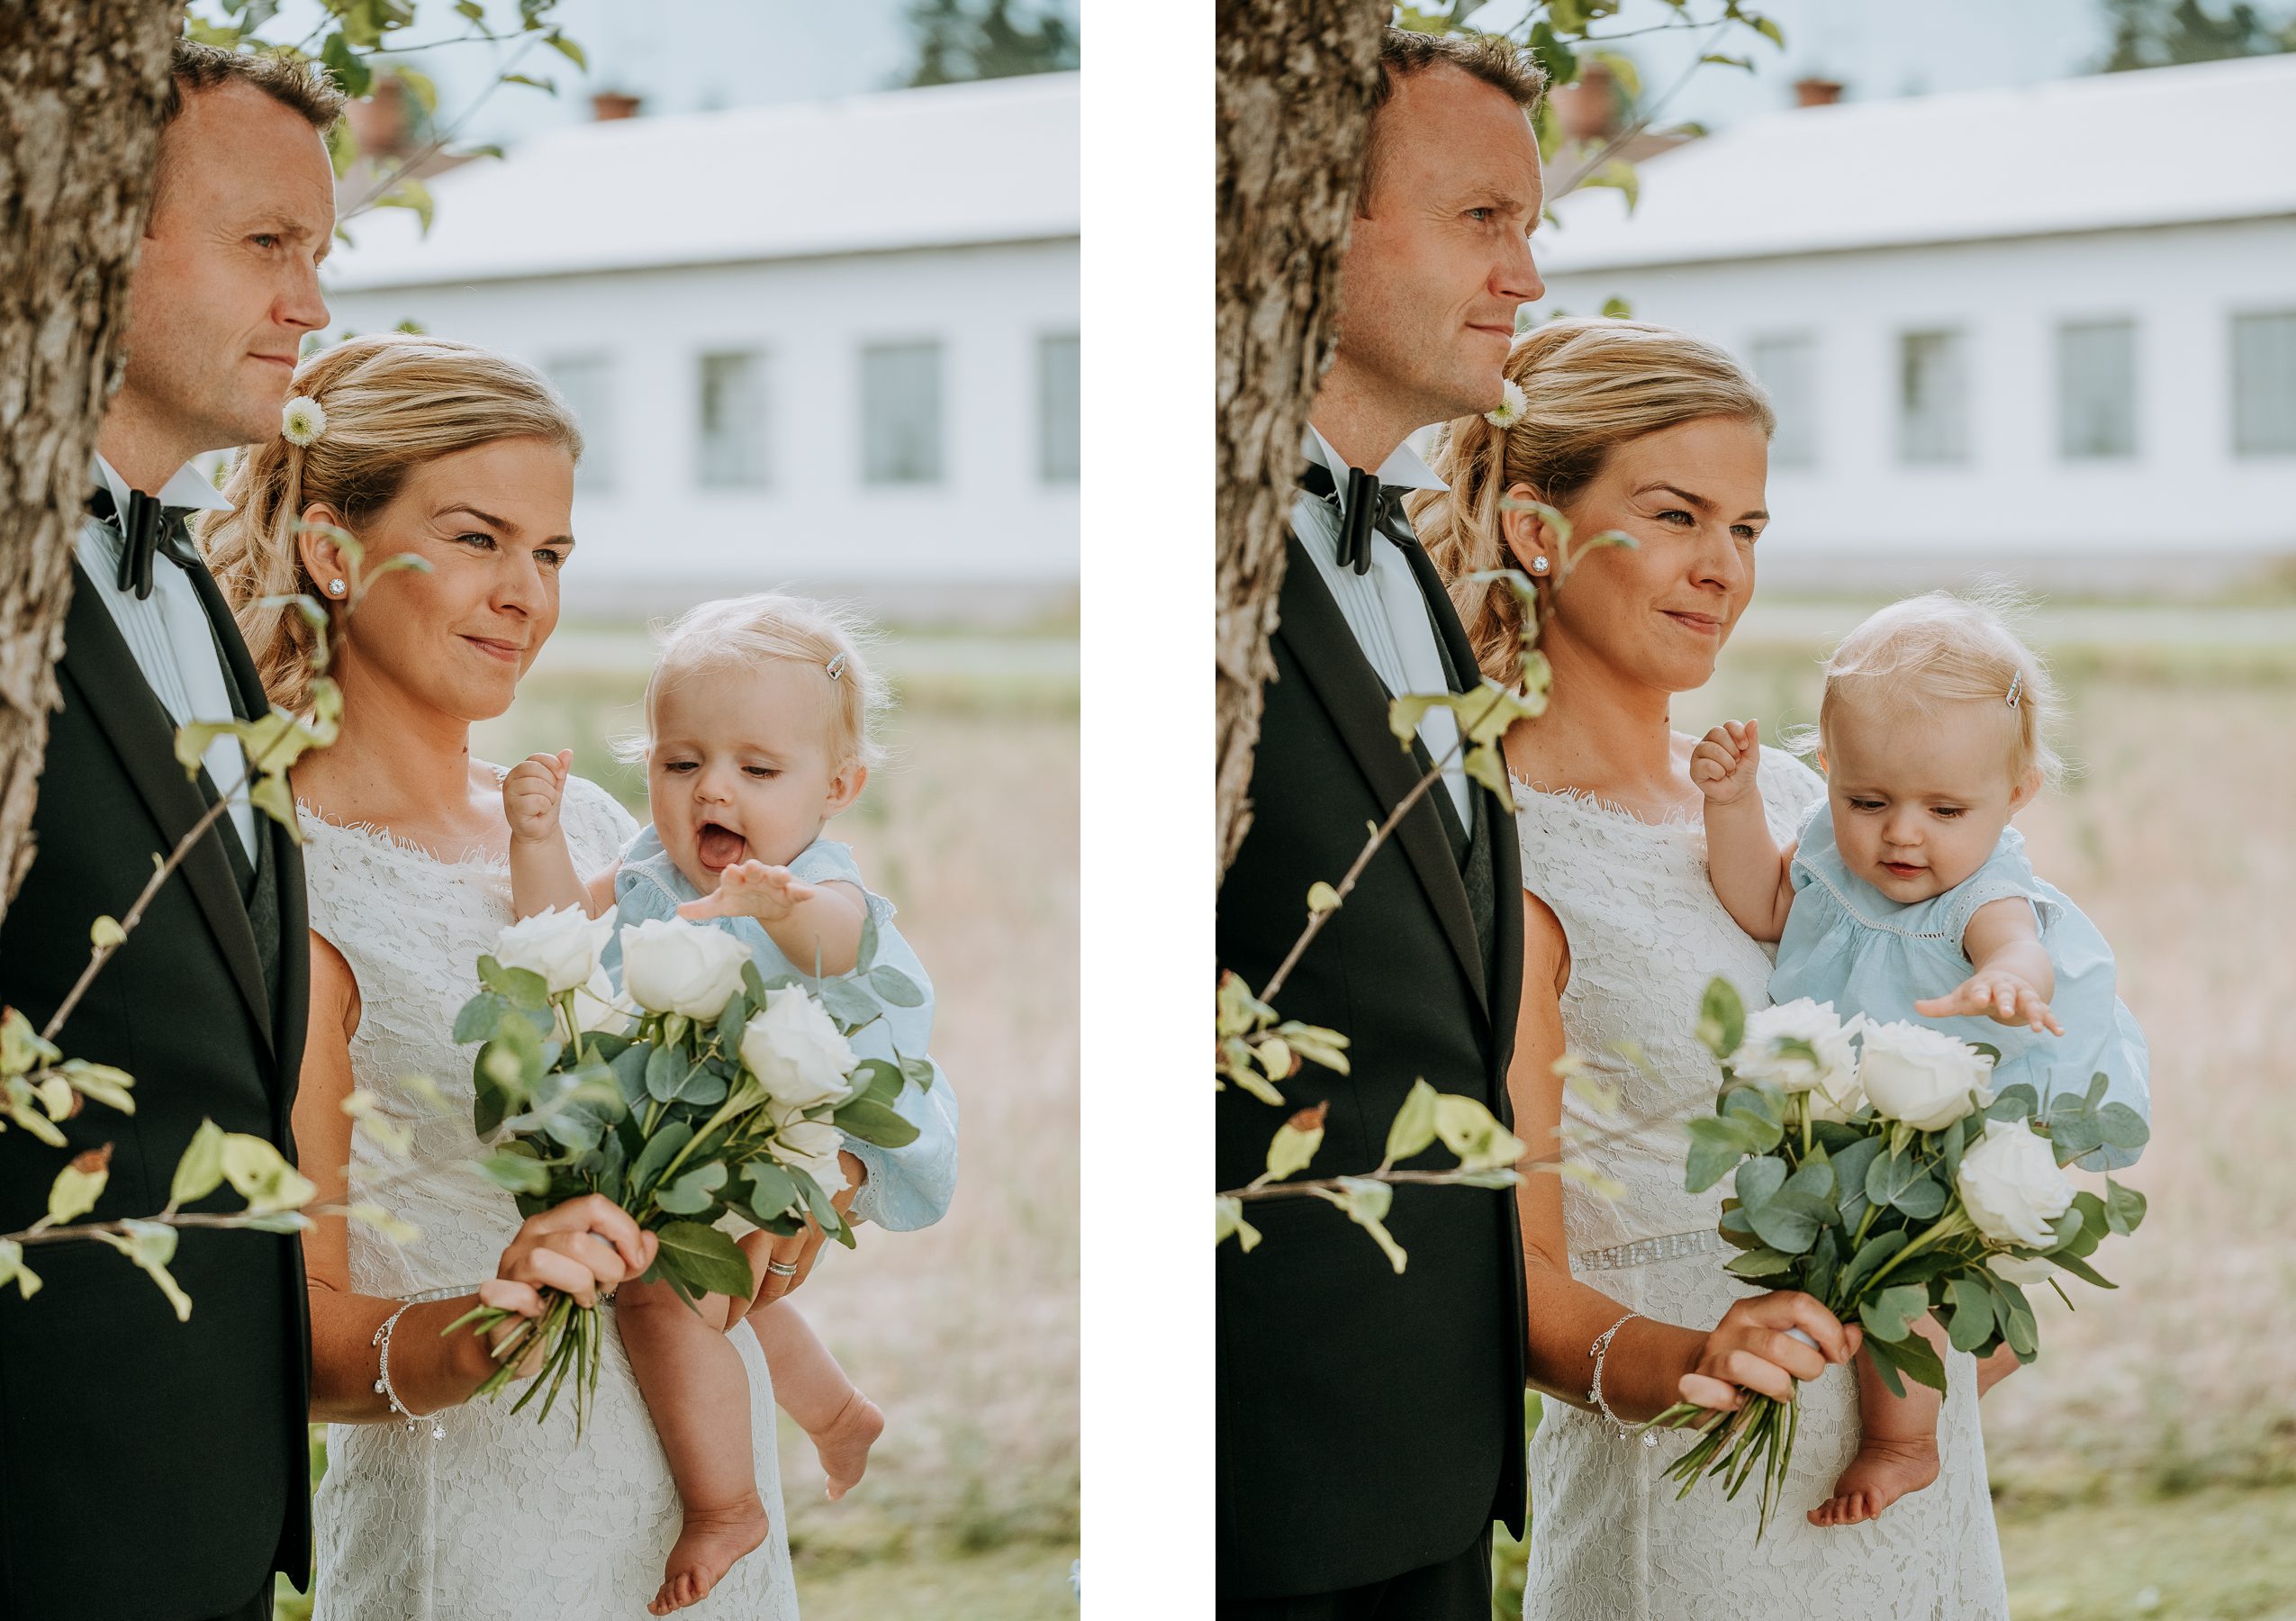 bröllopsfotograf i mälardalen enköping västerås uppsala sala strängnäs